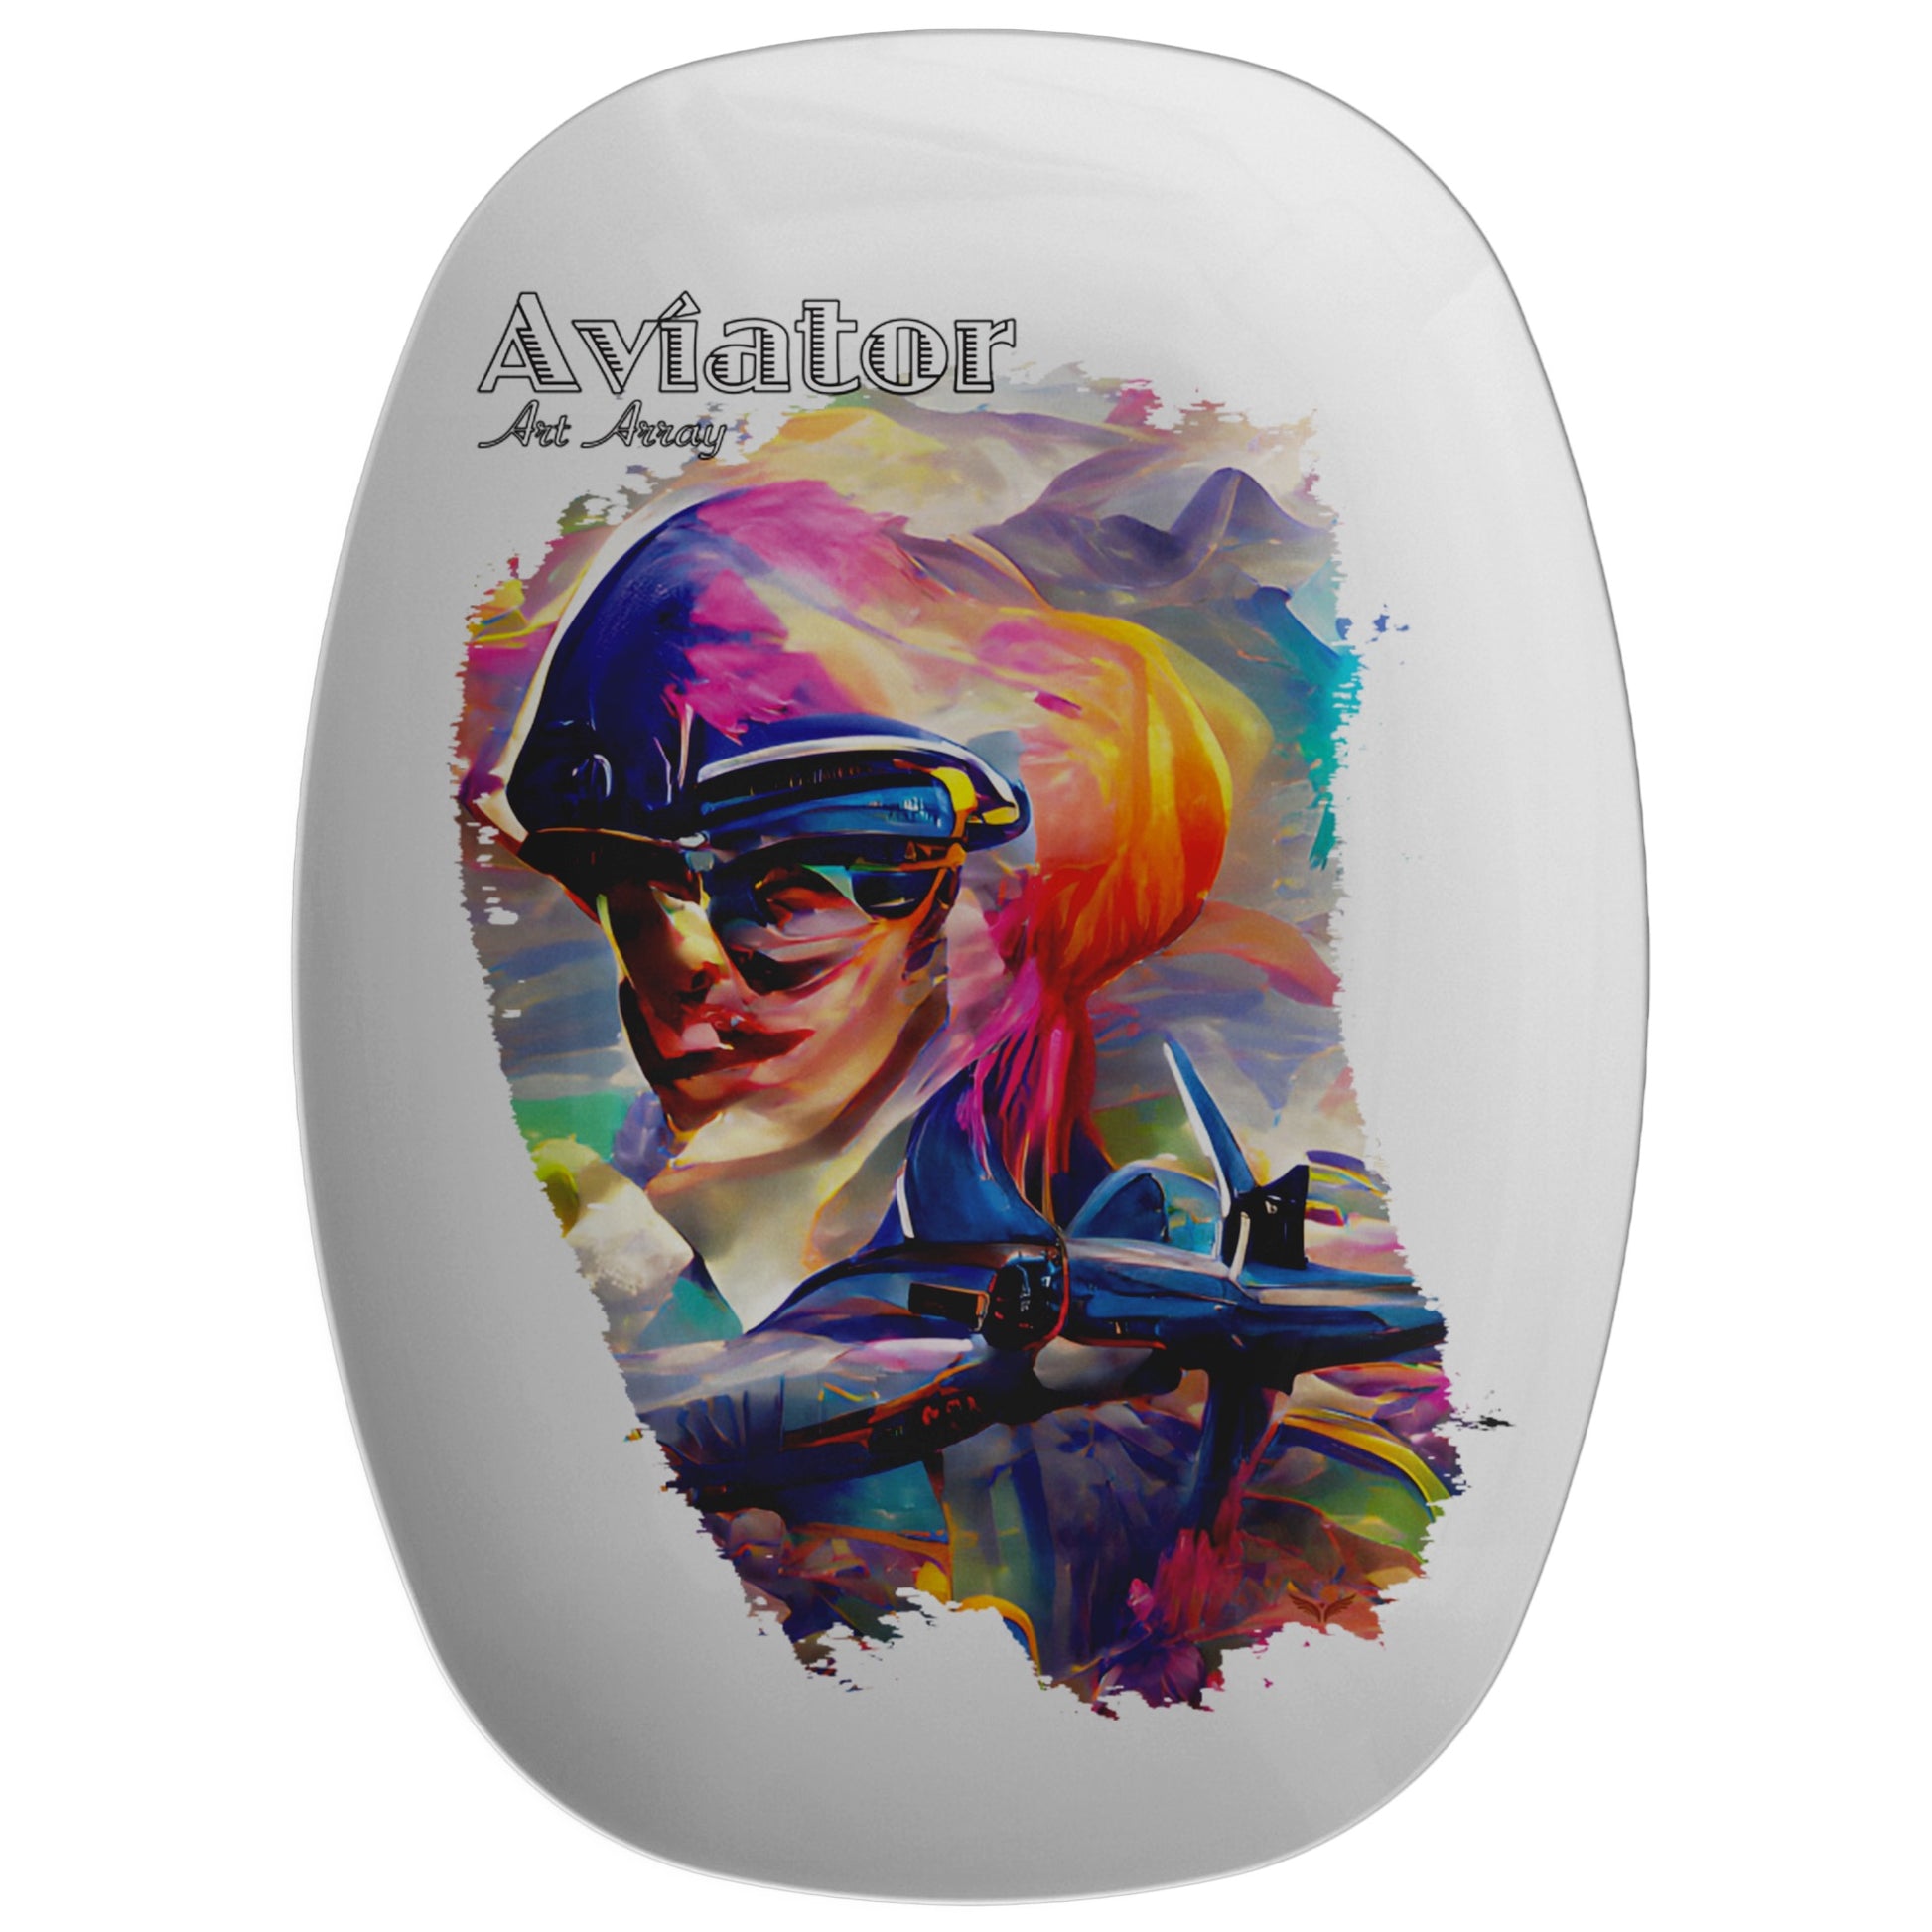 Aviator Art Array #1 - serving platter